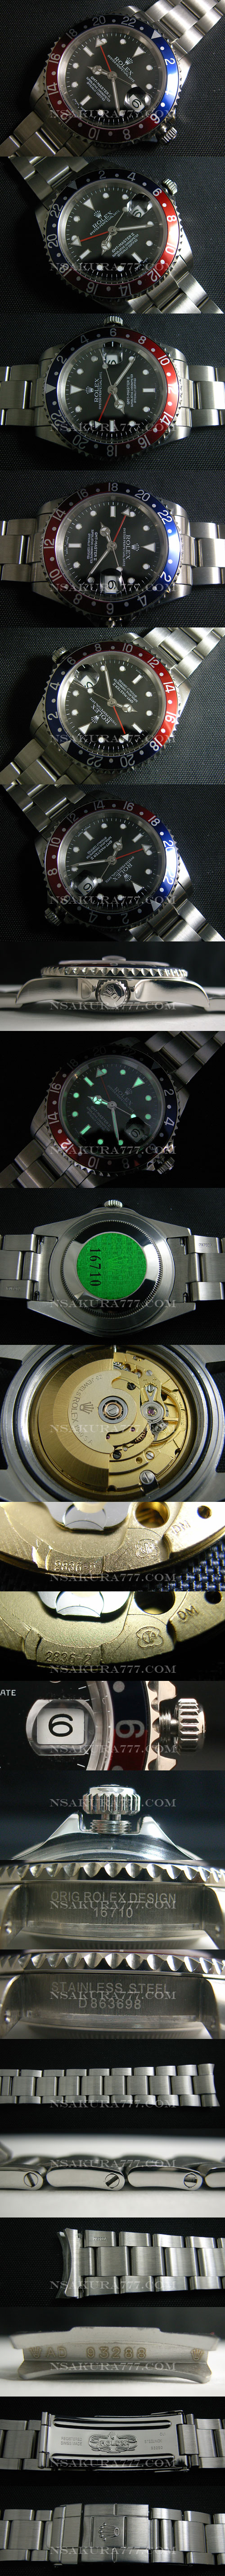 レプリカ時計ロレックス GMT マスター2836搭載 .赤針単独作動 - ウインドウを閉じる